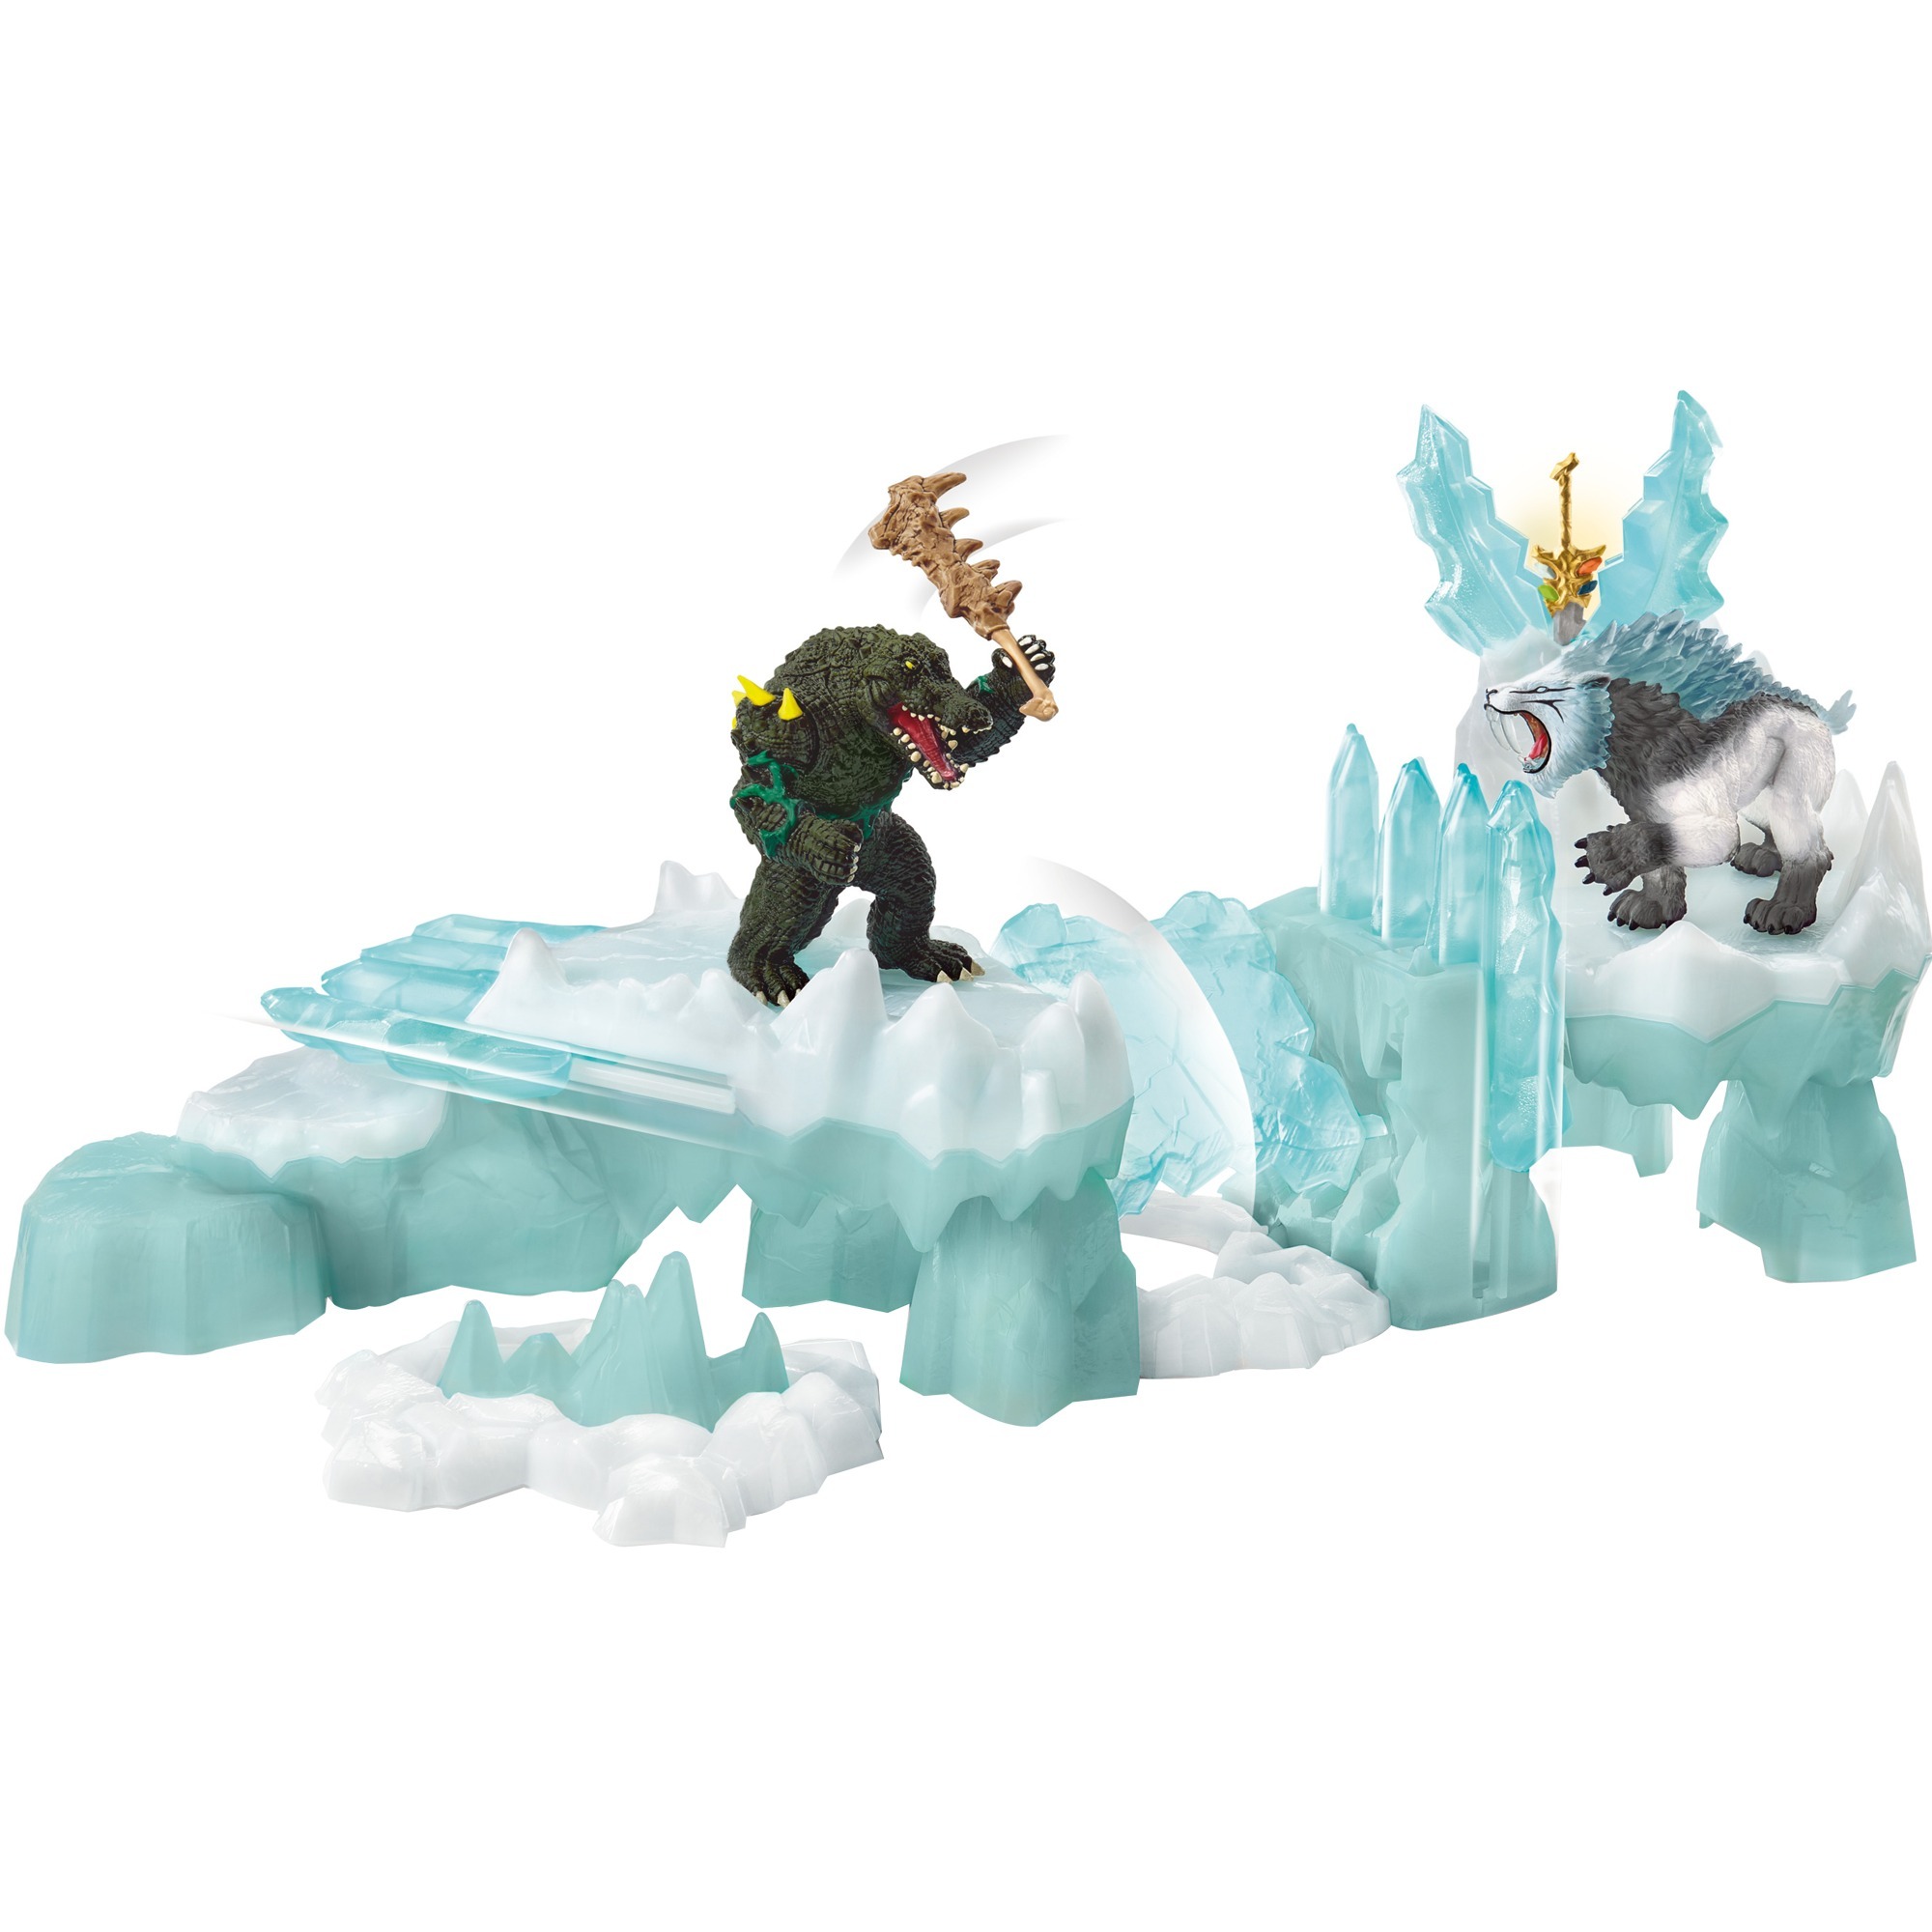 Image of Alternate - Eldrador Angriff auf die Eisfestung, Spielfigur online einkaufen bei Alternate